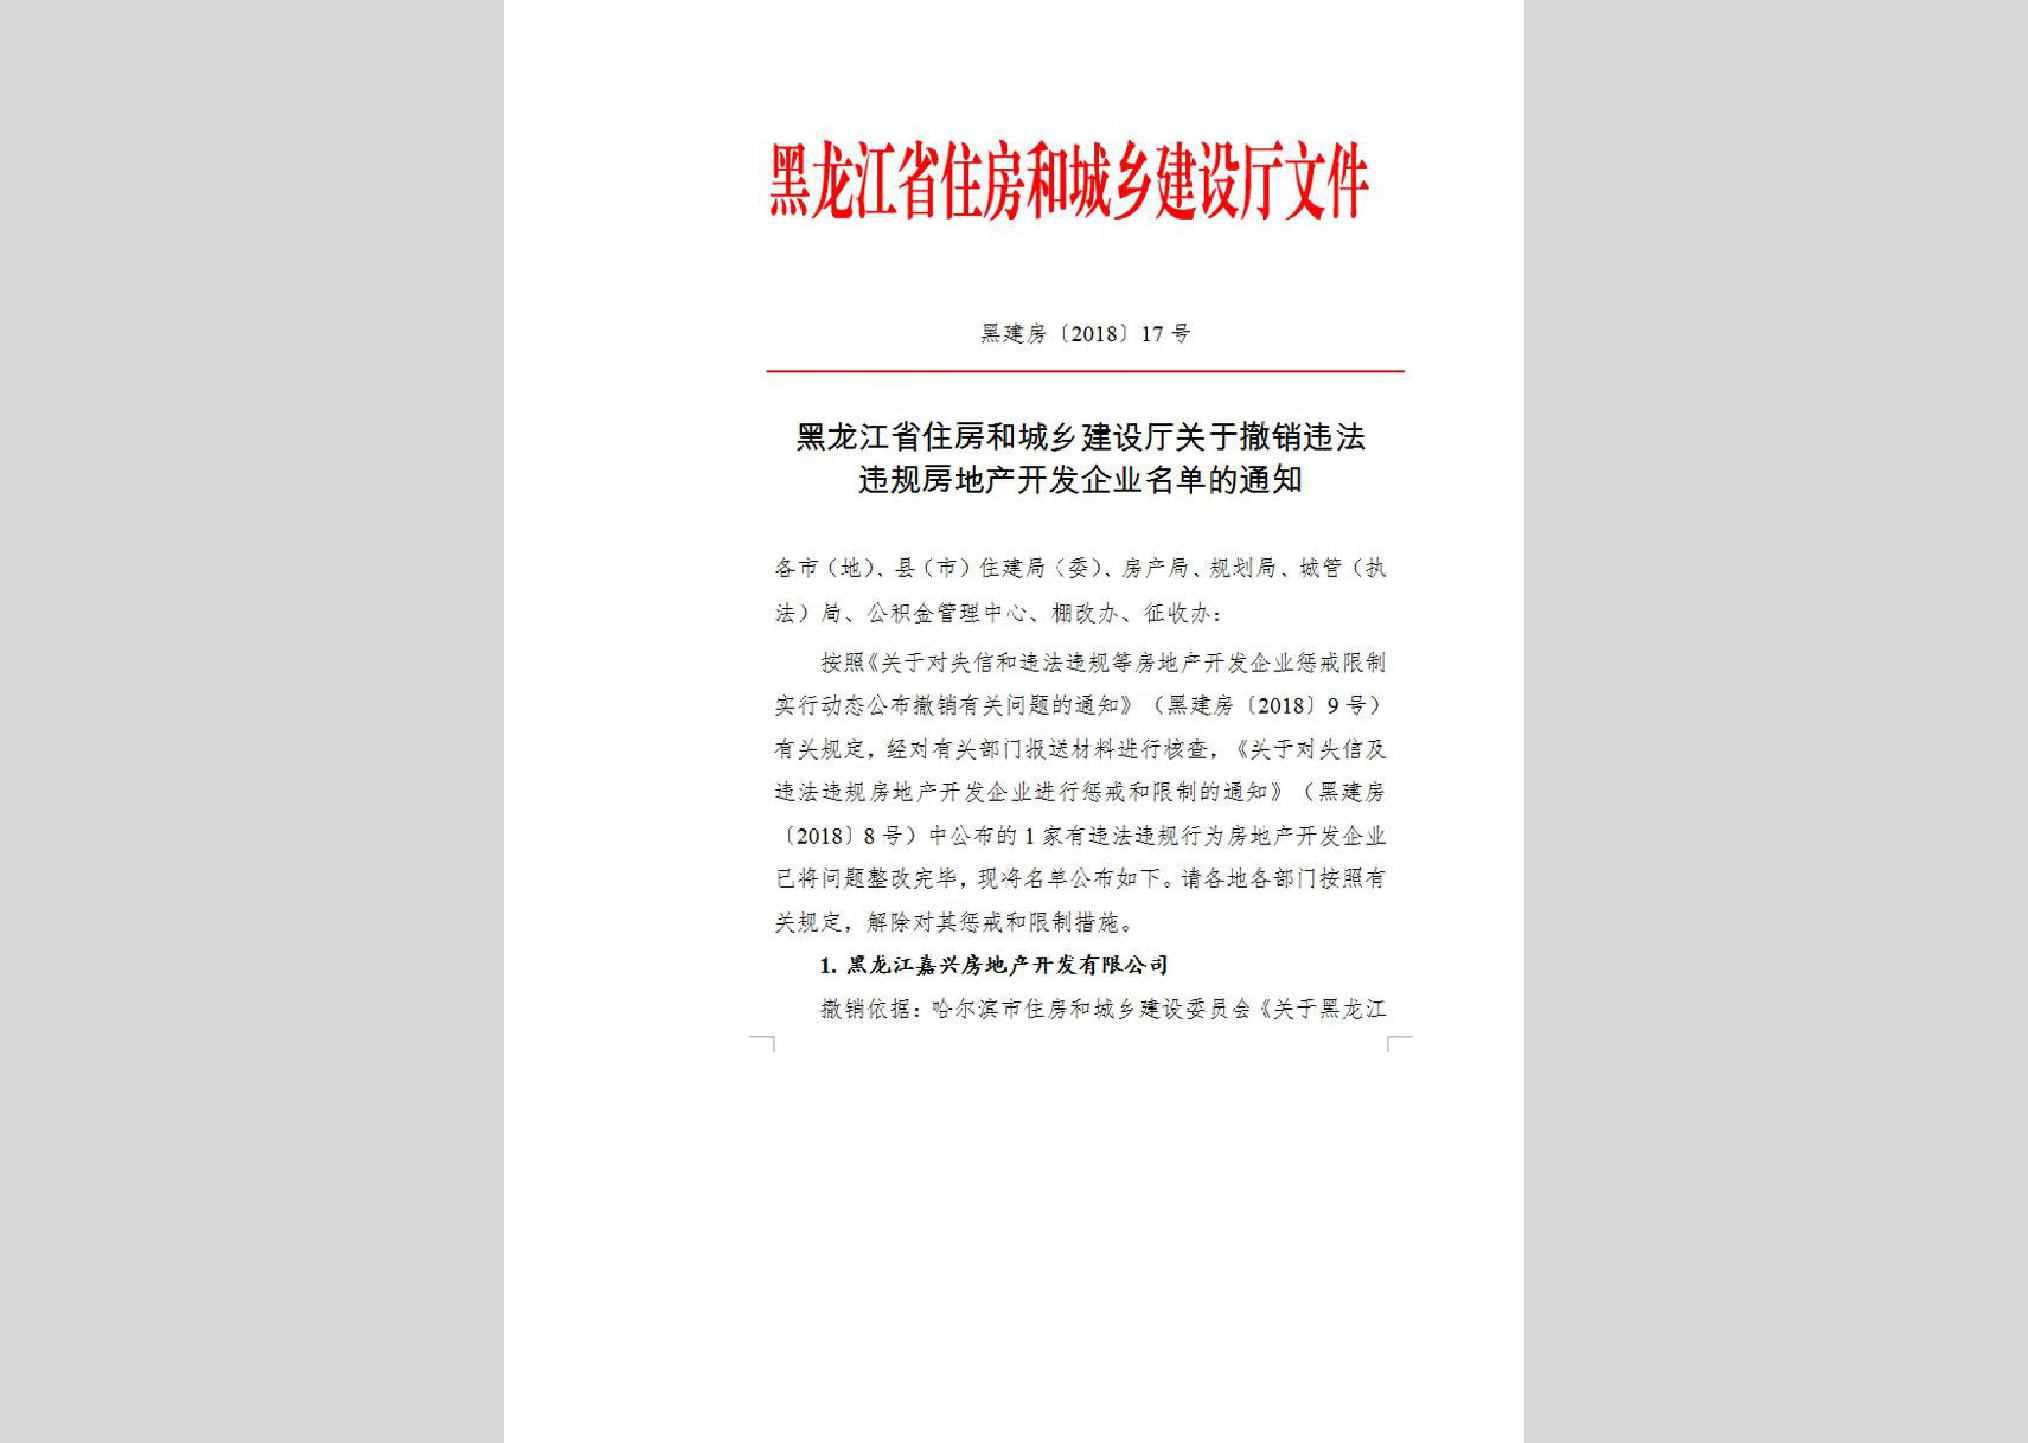 黑建房-2018-17：黑龙江省住房和城乡建设厅关于撤销违法违规房地产开发企业名单的通知